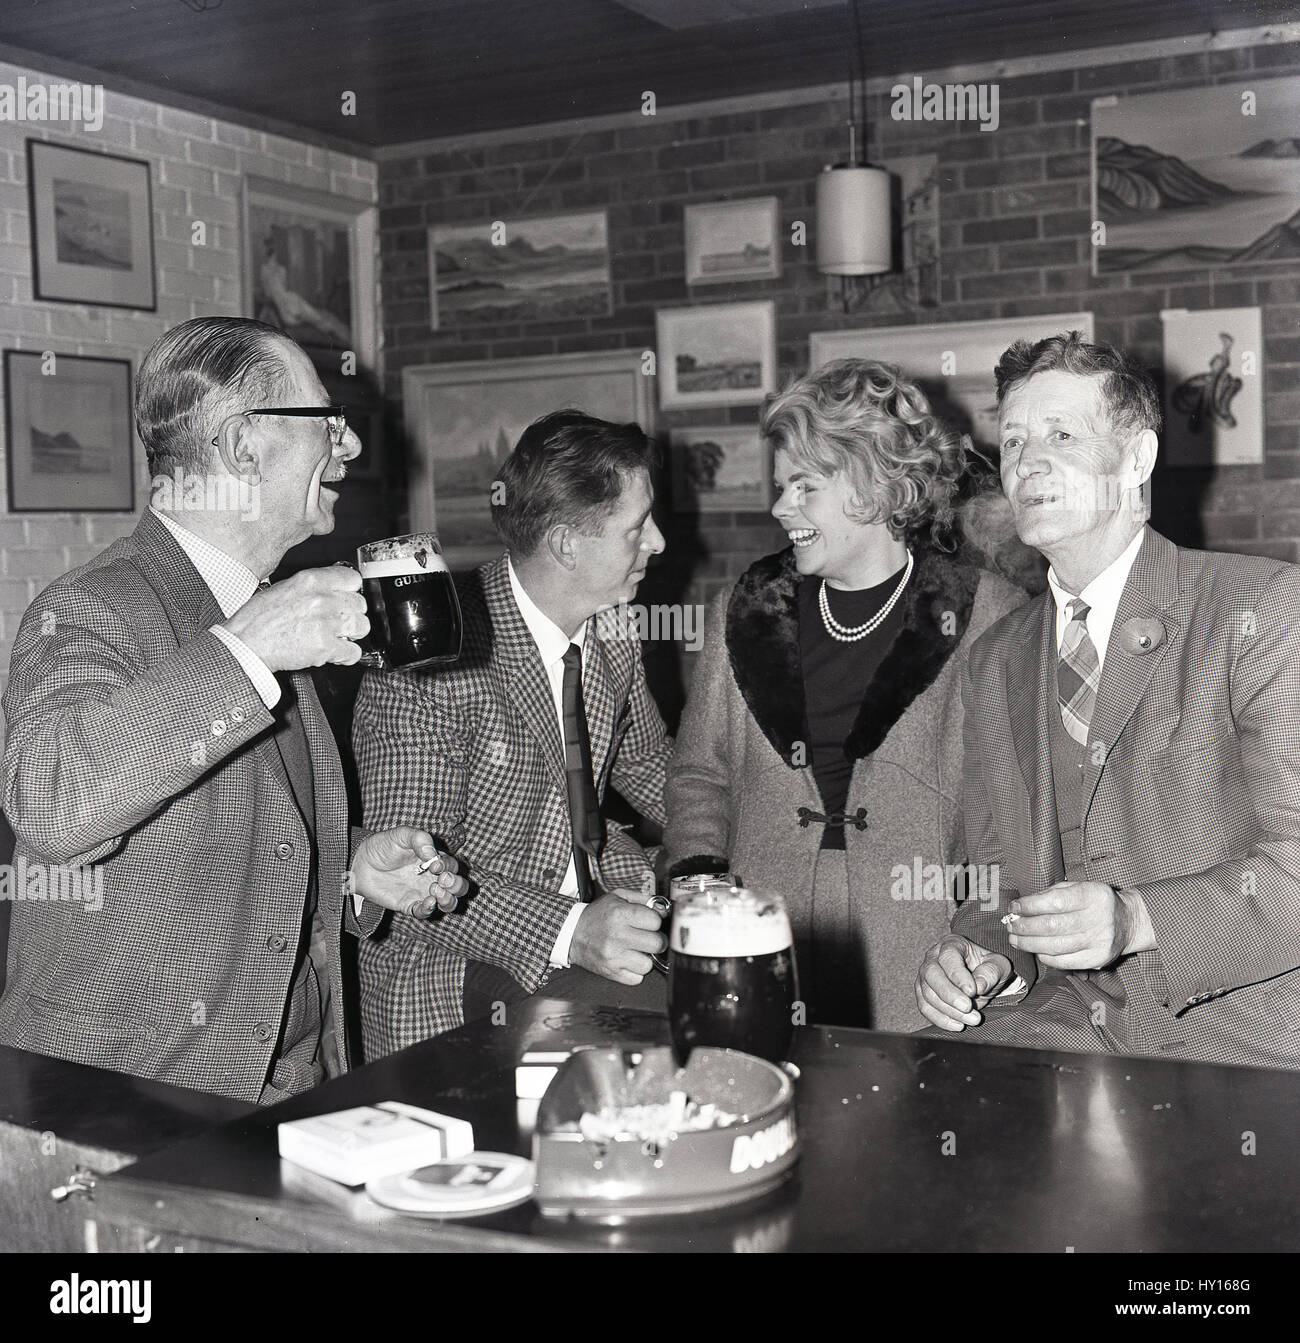 Années 1960, historiques, glamour femme dans un manteau avec un revers de fourrure dans un bar avec des collègues masculins de déguster une boisson et l'allume après le travail, England, UK Banque D'Images